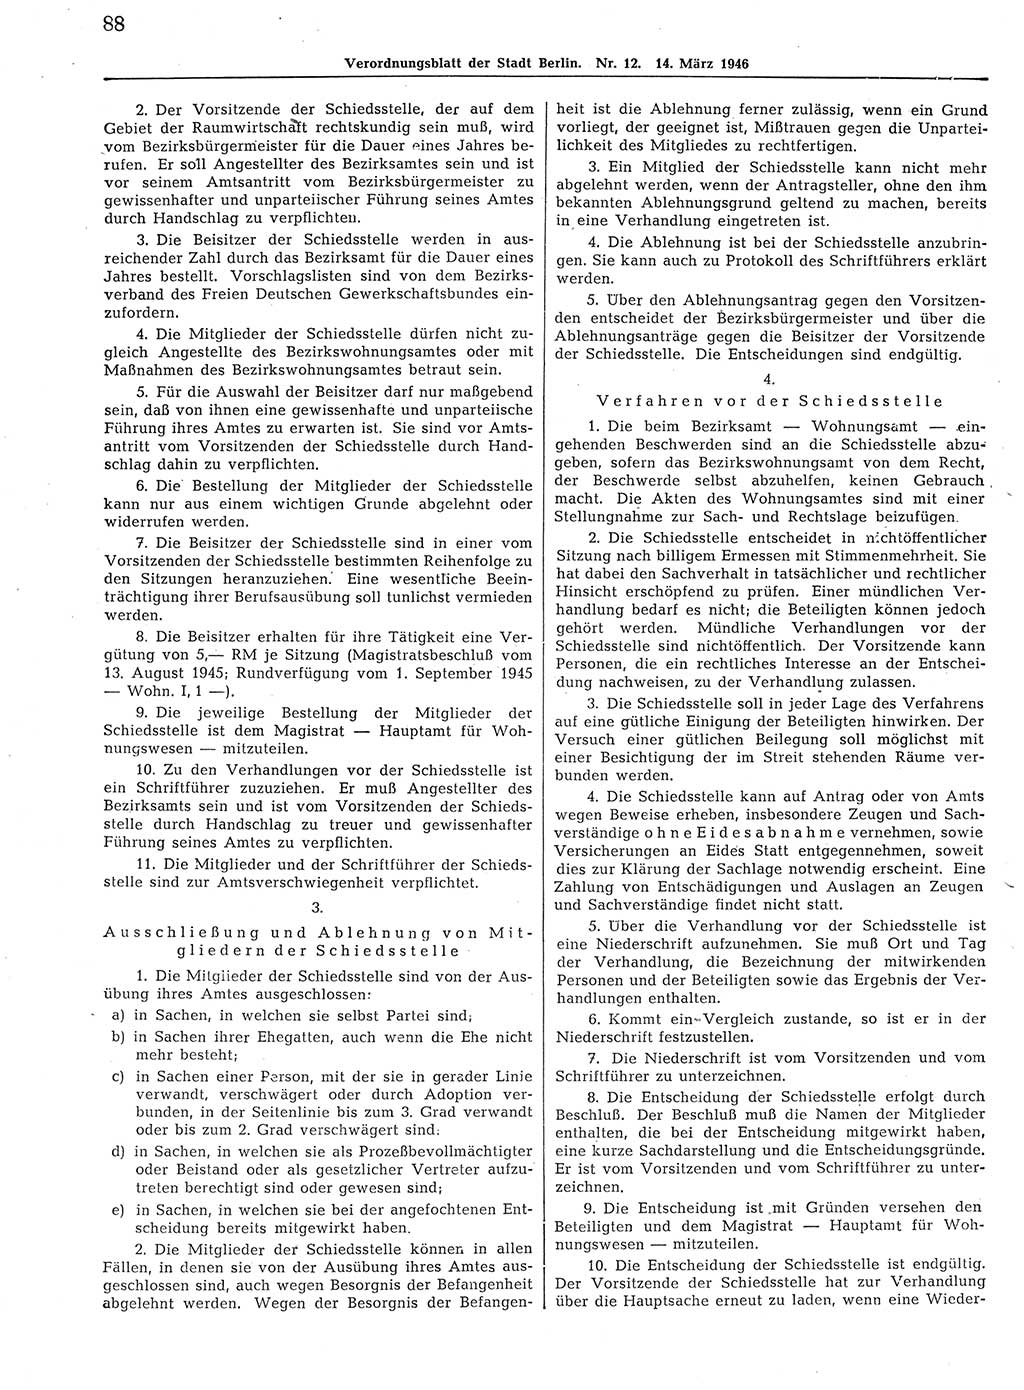 Verordnungsblatt (VOBl.) der Stadt Berlin, für Groß-Berlin 1946, Seite 88 (VOBl. Bln. 1946, S. 88)